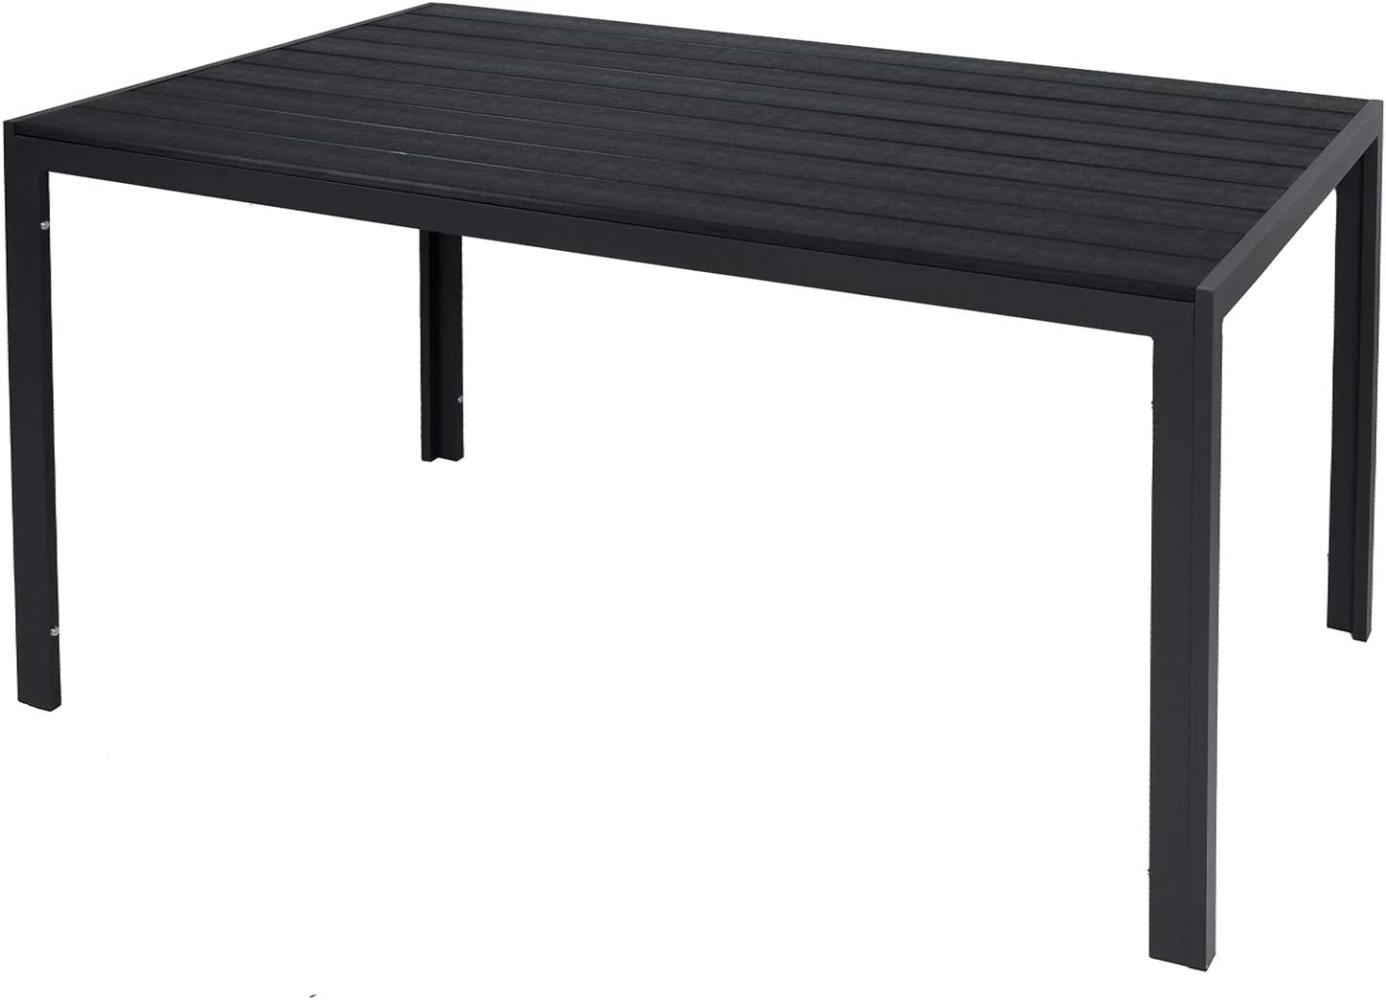 Non-Wood Gartentisch Esstisch Aluminium anthrazit / schwarz 125x70cm Bild 1